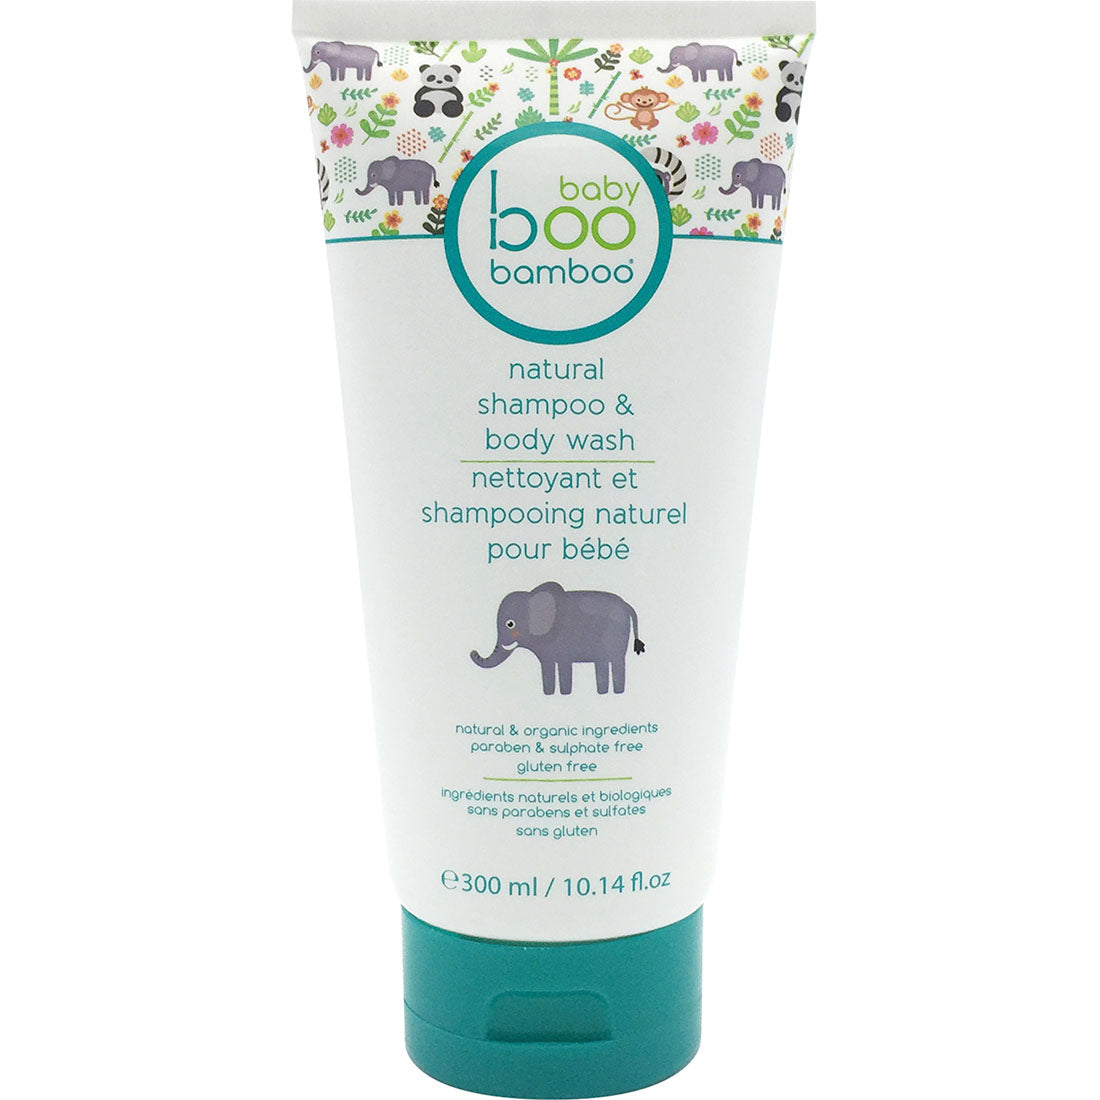 Boo Bamboo Baby Boo Natural Shampoo Body Wash, 300ml